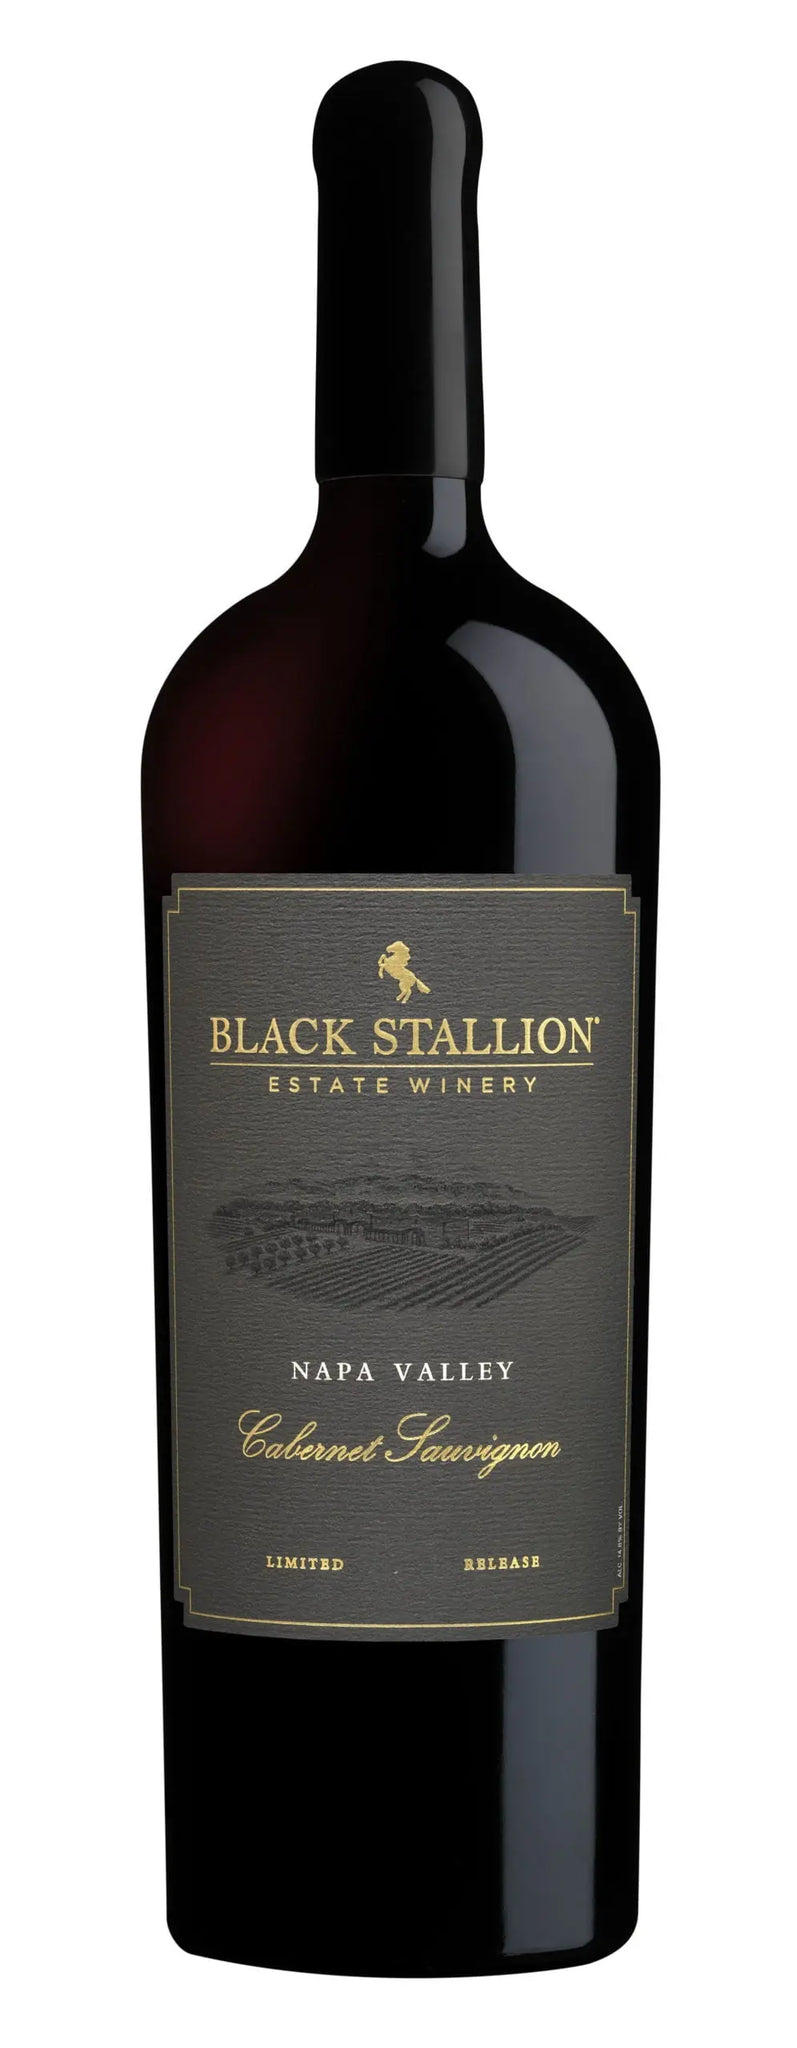 Black Stallion Limited Release Cabernet Sauvignon 2012 (1x150cl) - TwoMoreGlasses.com